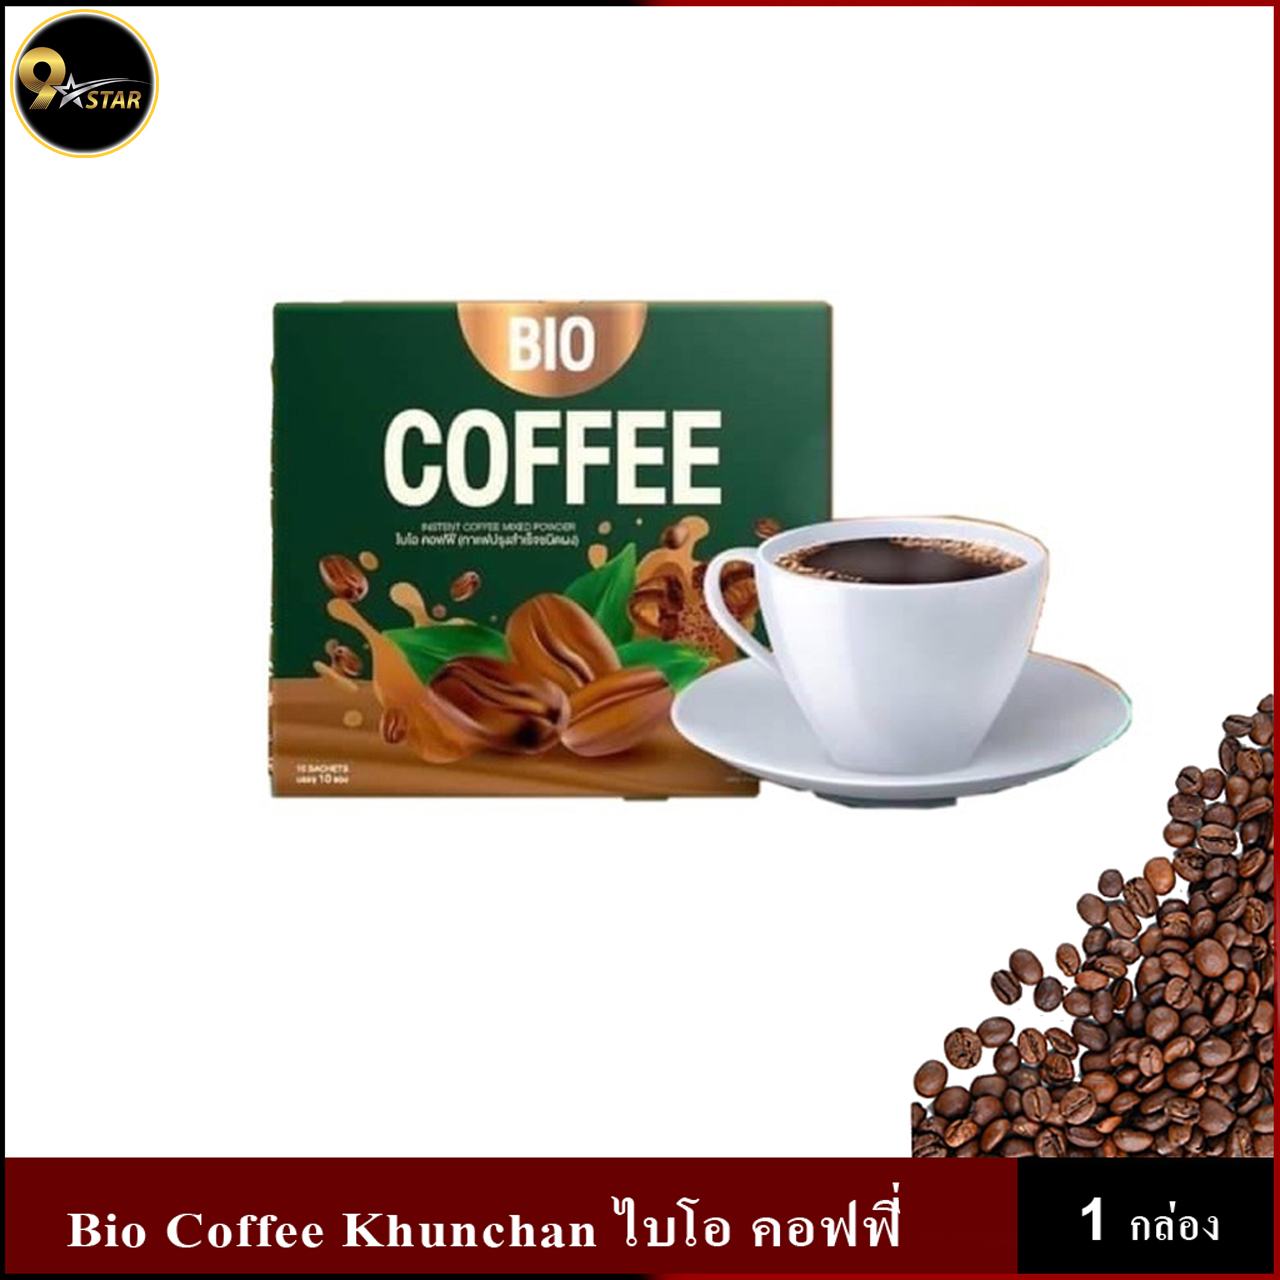 กาแฟ ไบโอ BIO Coffee